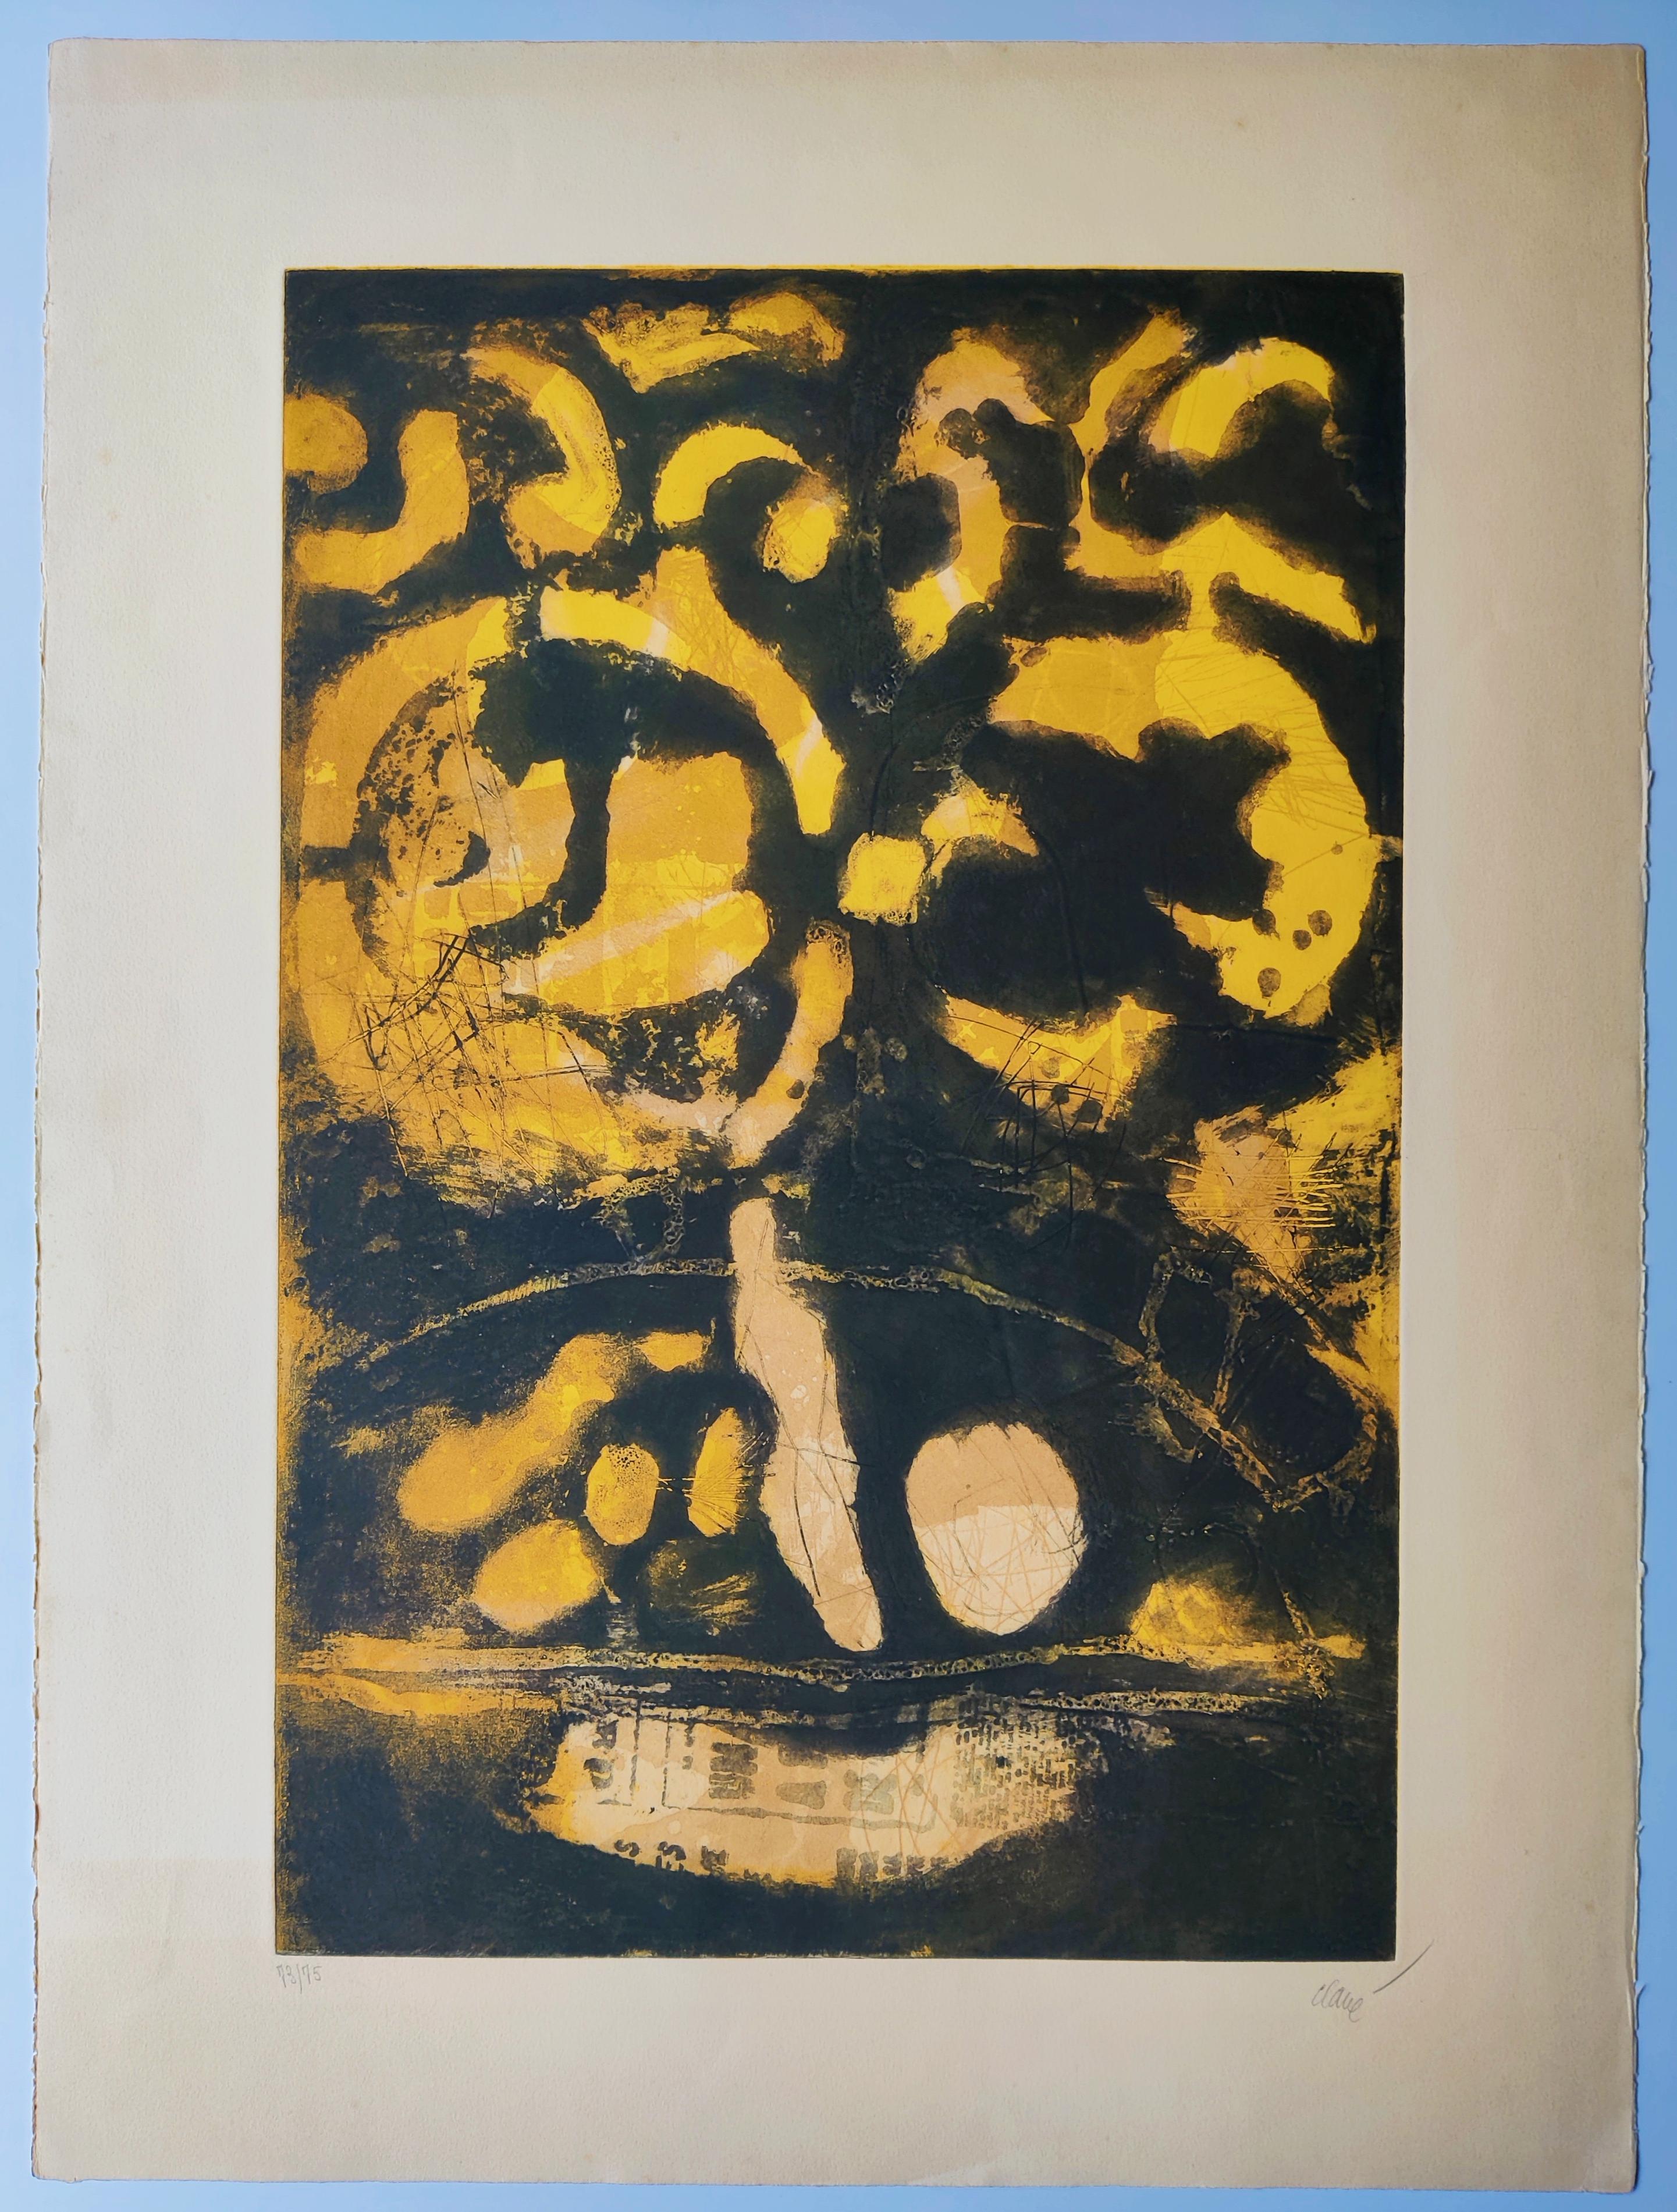 Antoni Clave
Guerrier, 1970
Radierung mit Aquatinta, mit Bleistift signiert und nummeriert
Auflage: 73/75 unten links
Signiert unten rechts
Größe: 76 x 56 cm